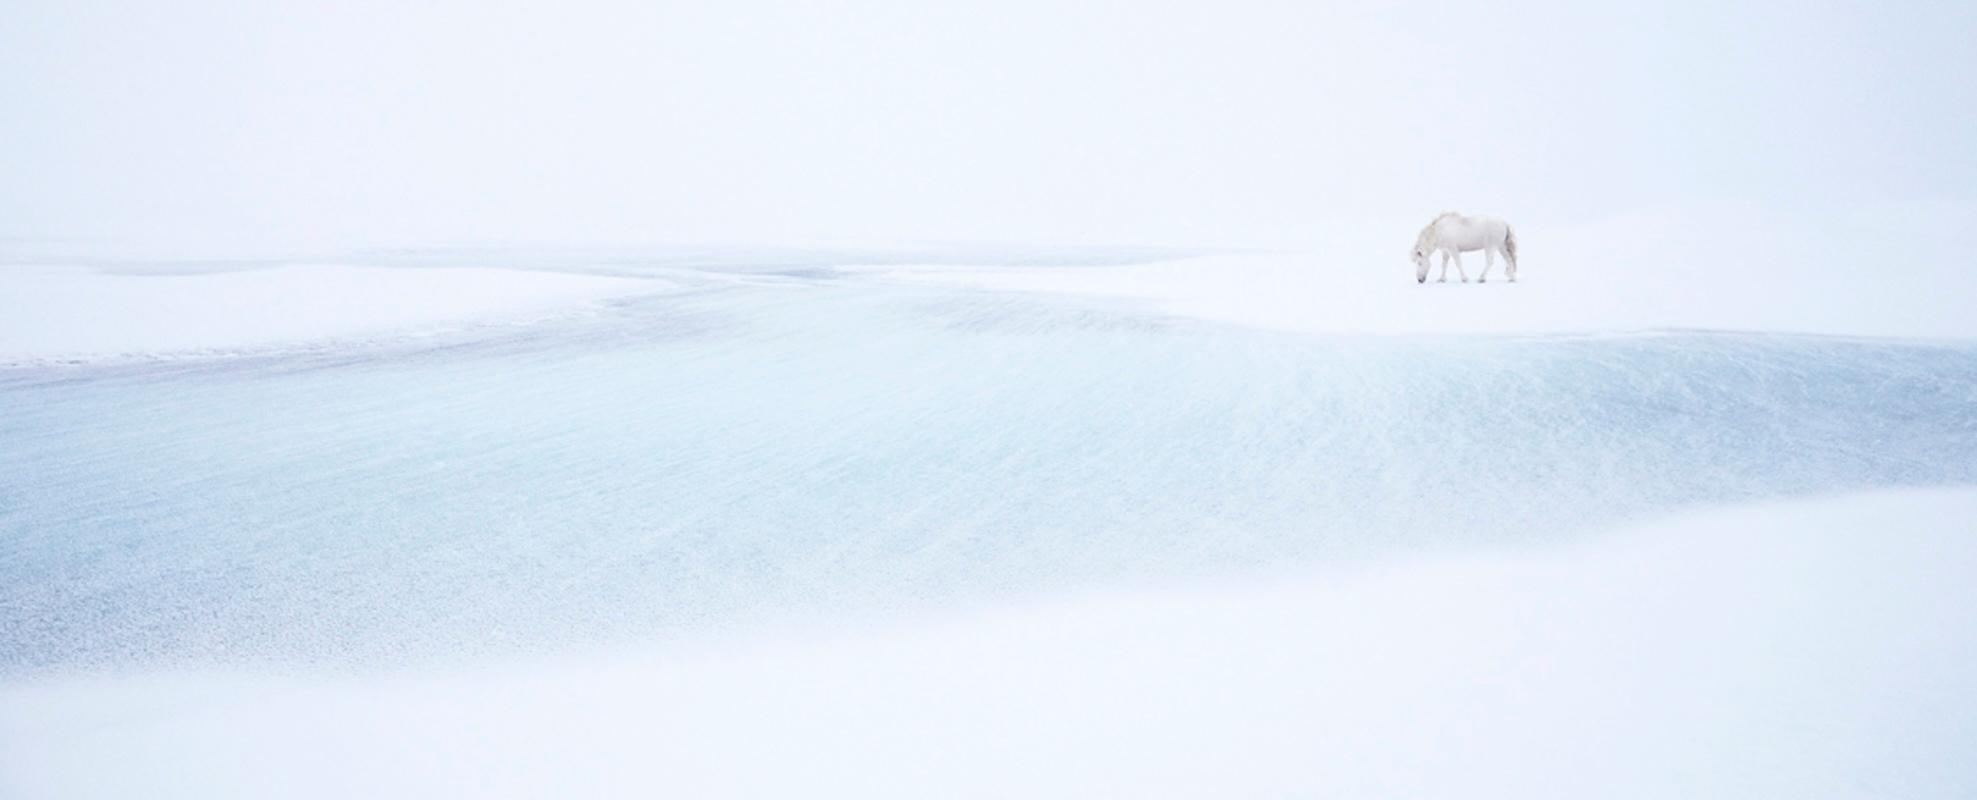 Landscape Photograph Drew Doggett - Un cheval blanc solitaire à l'aise à côté de la toundra gelée surréaliste de l'Islande.